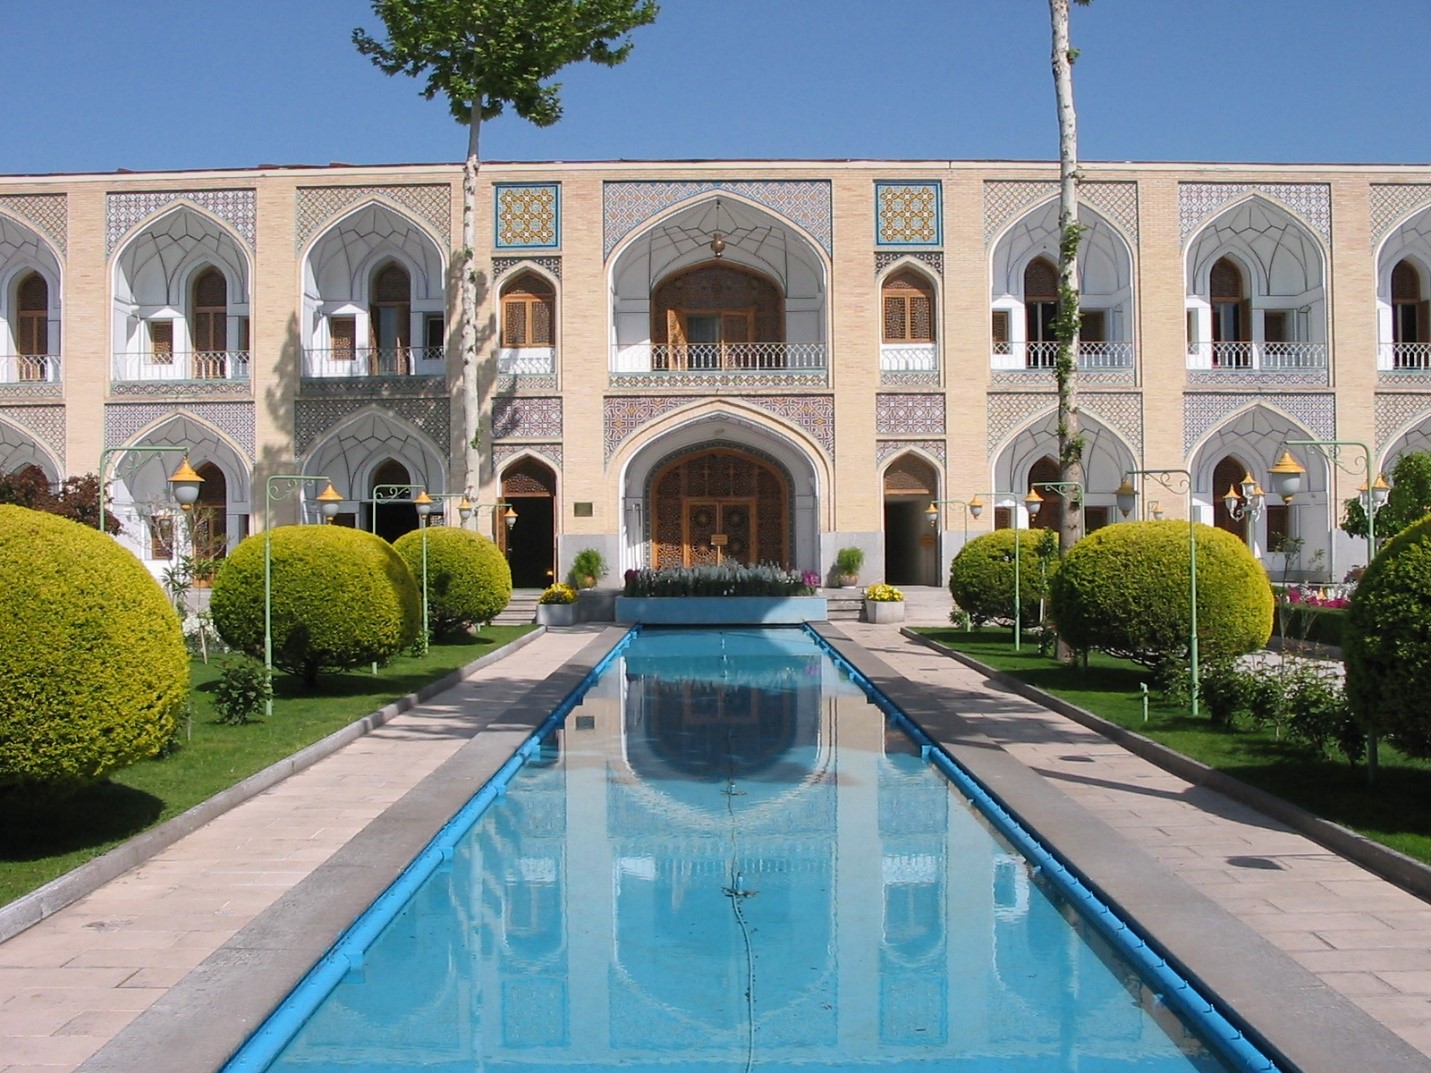 8 تا از بهترین جاهای دیدنی اصفهان